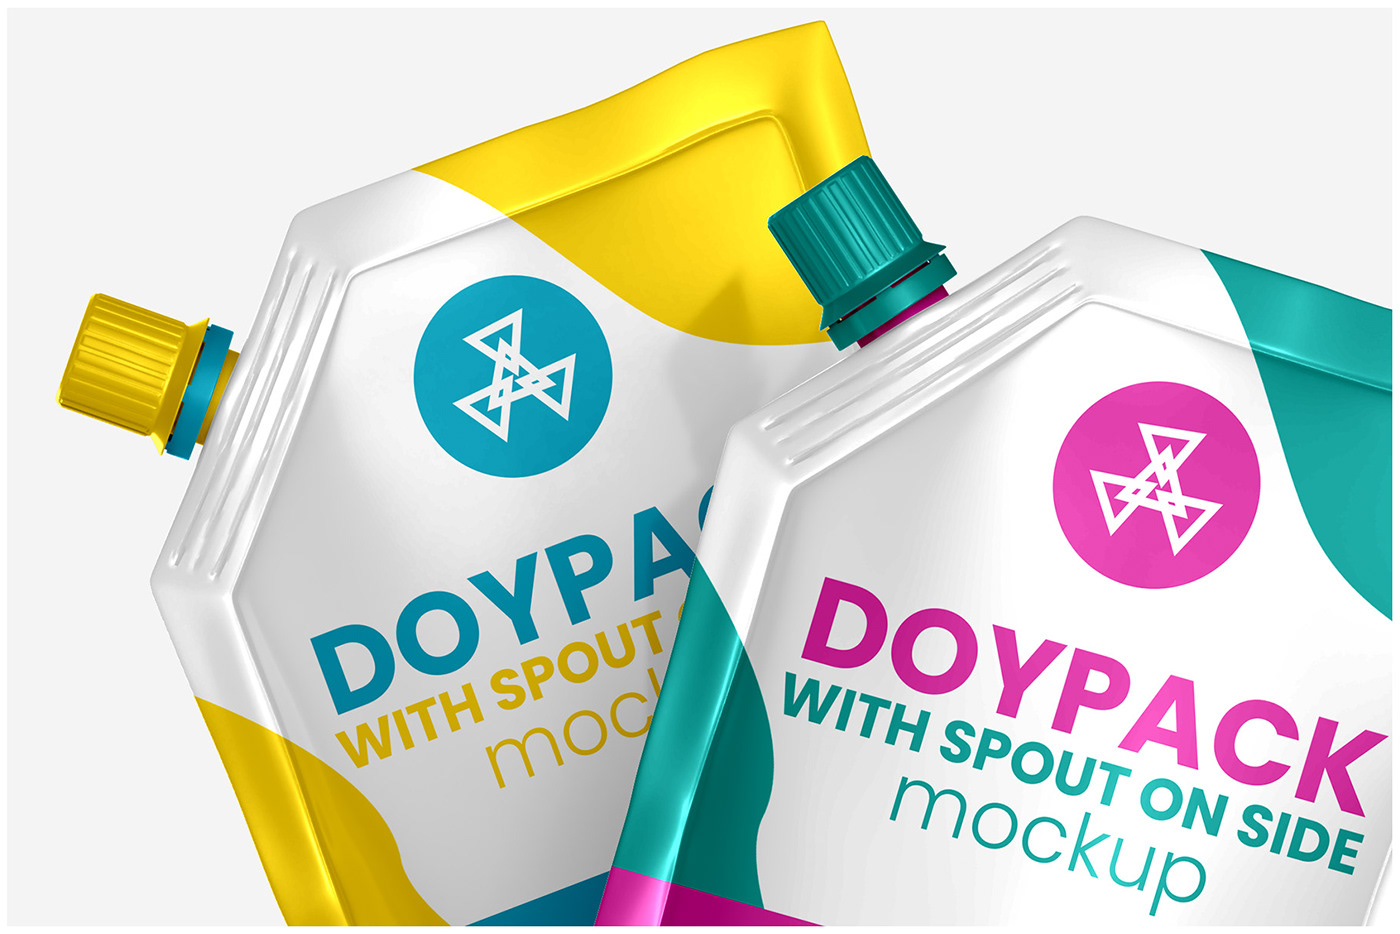 doypack pouch Mockup bag Packaging plastic aluminum box spout